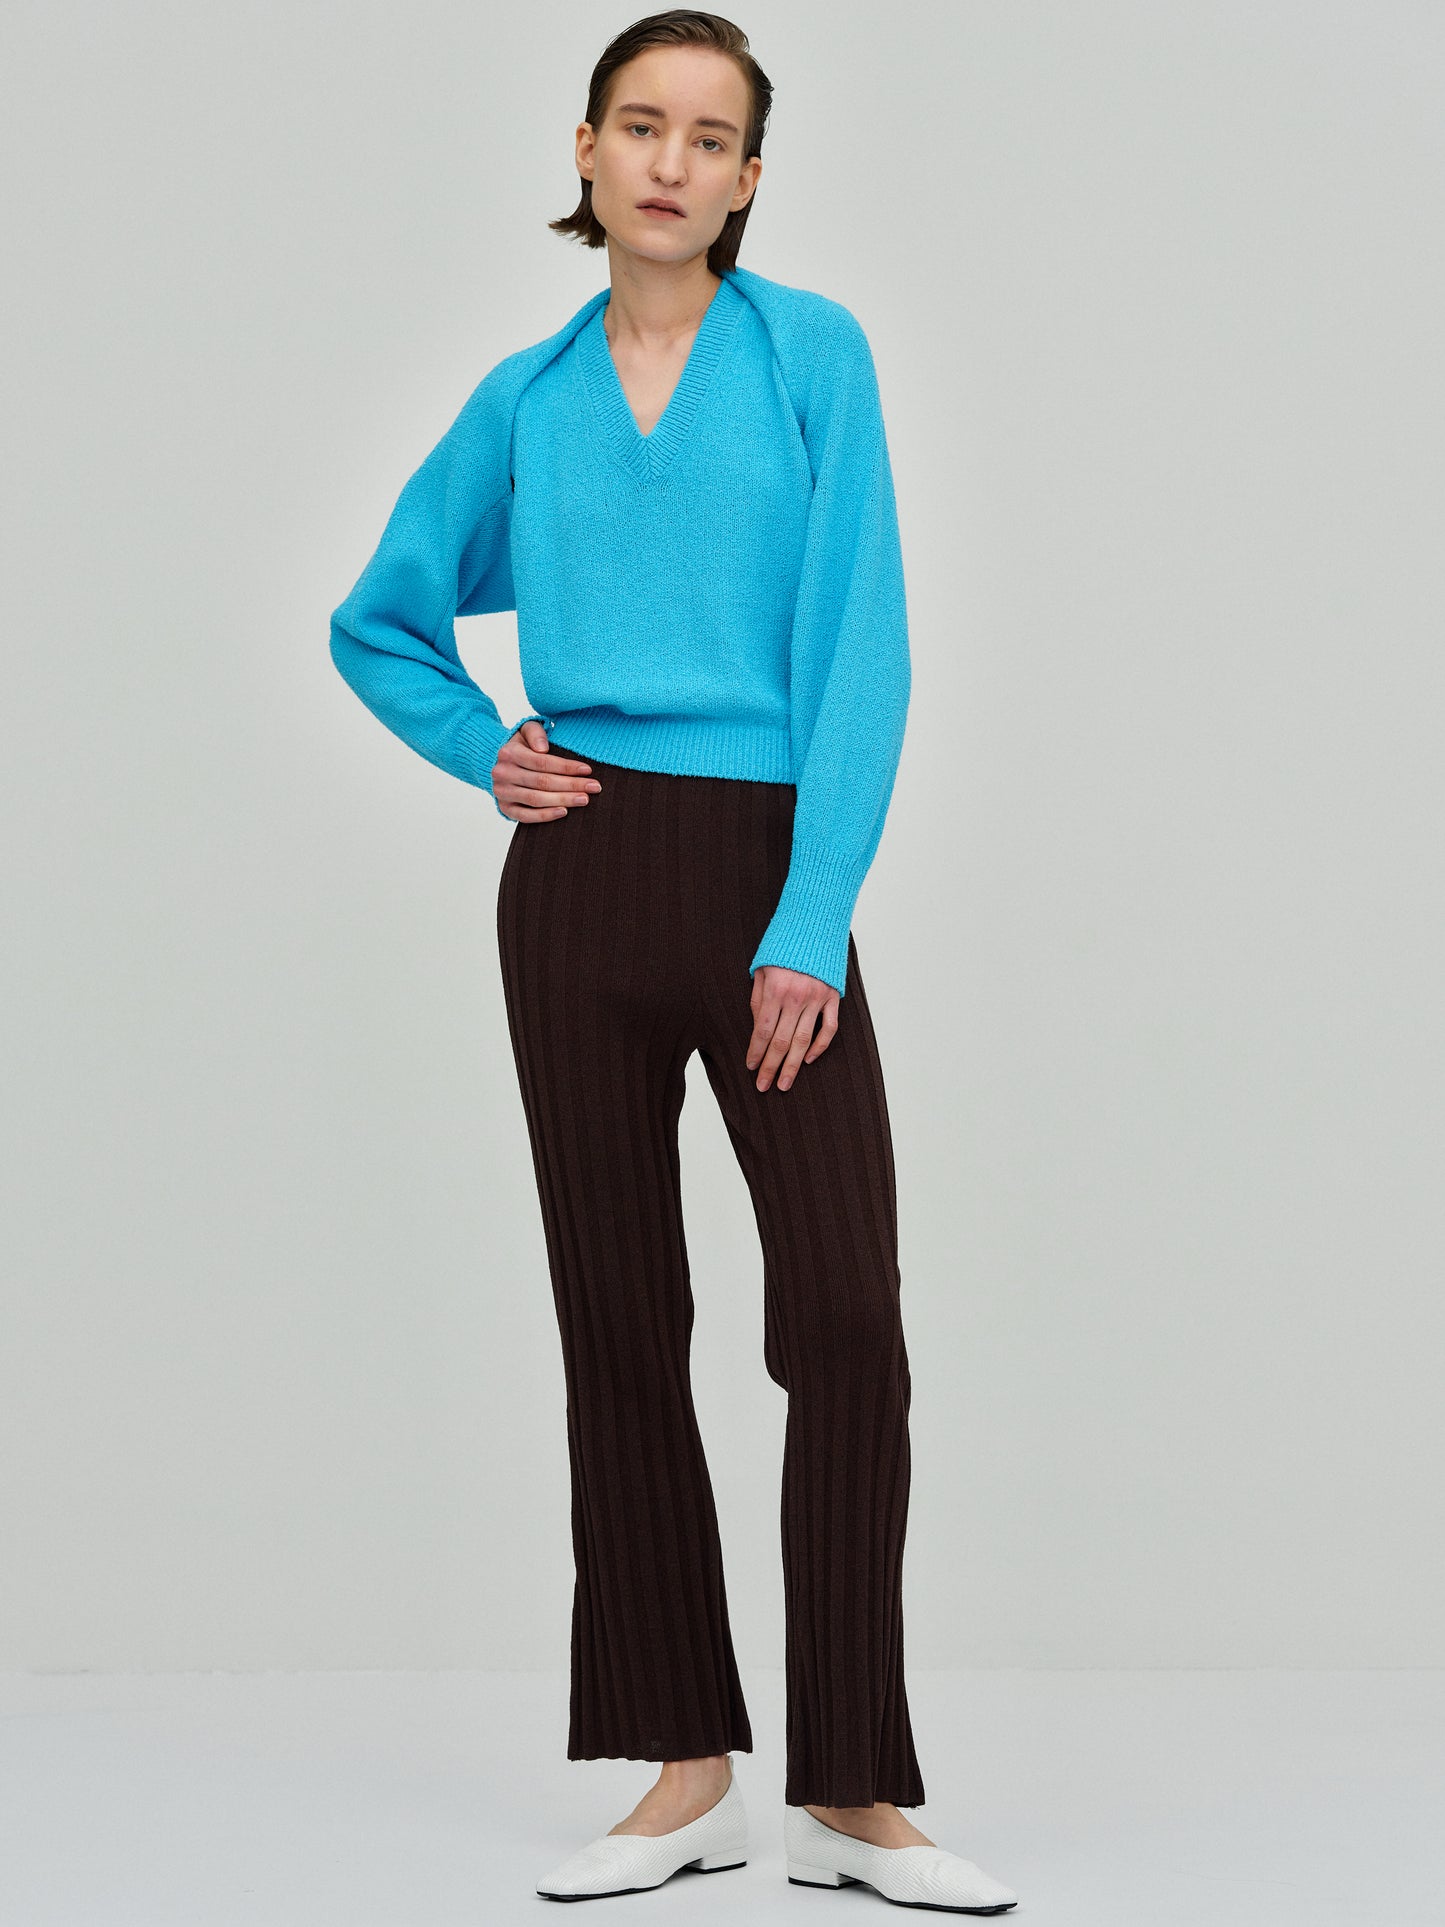 Bouclé Knit Vest + Shrug Set, Turquoise – SourceUnknown